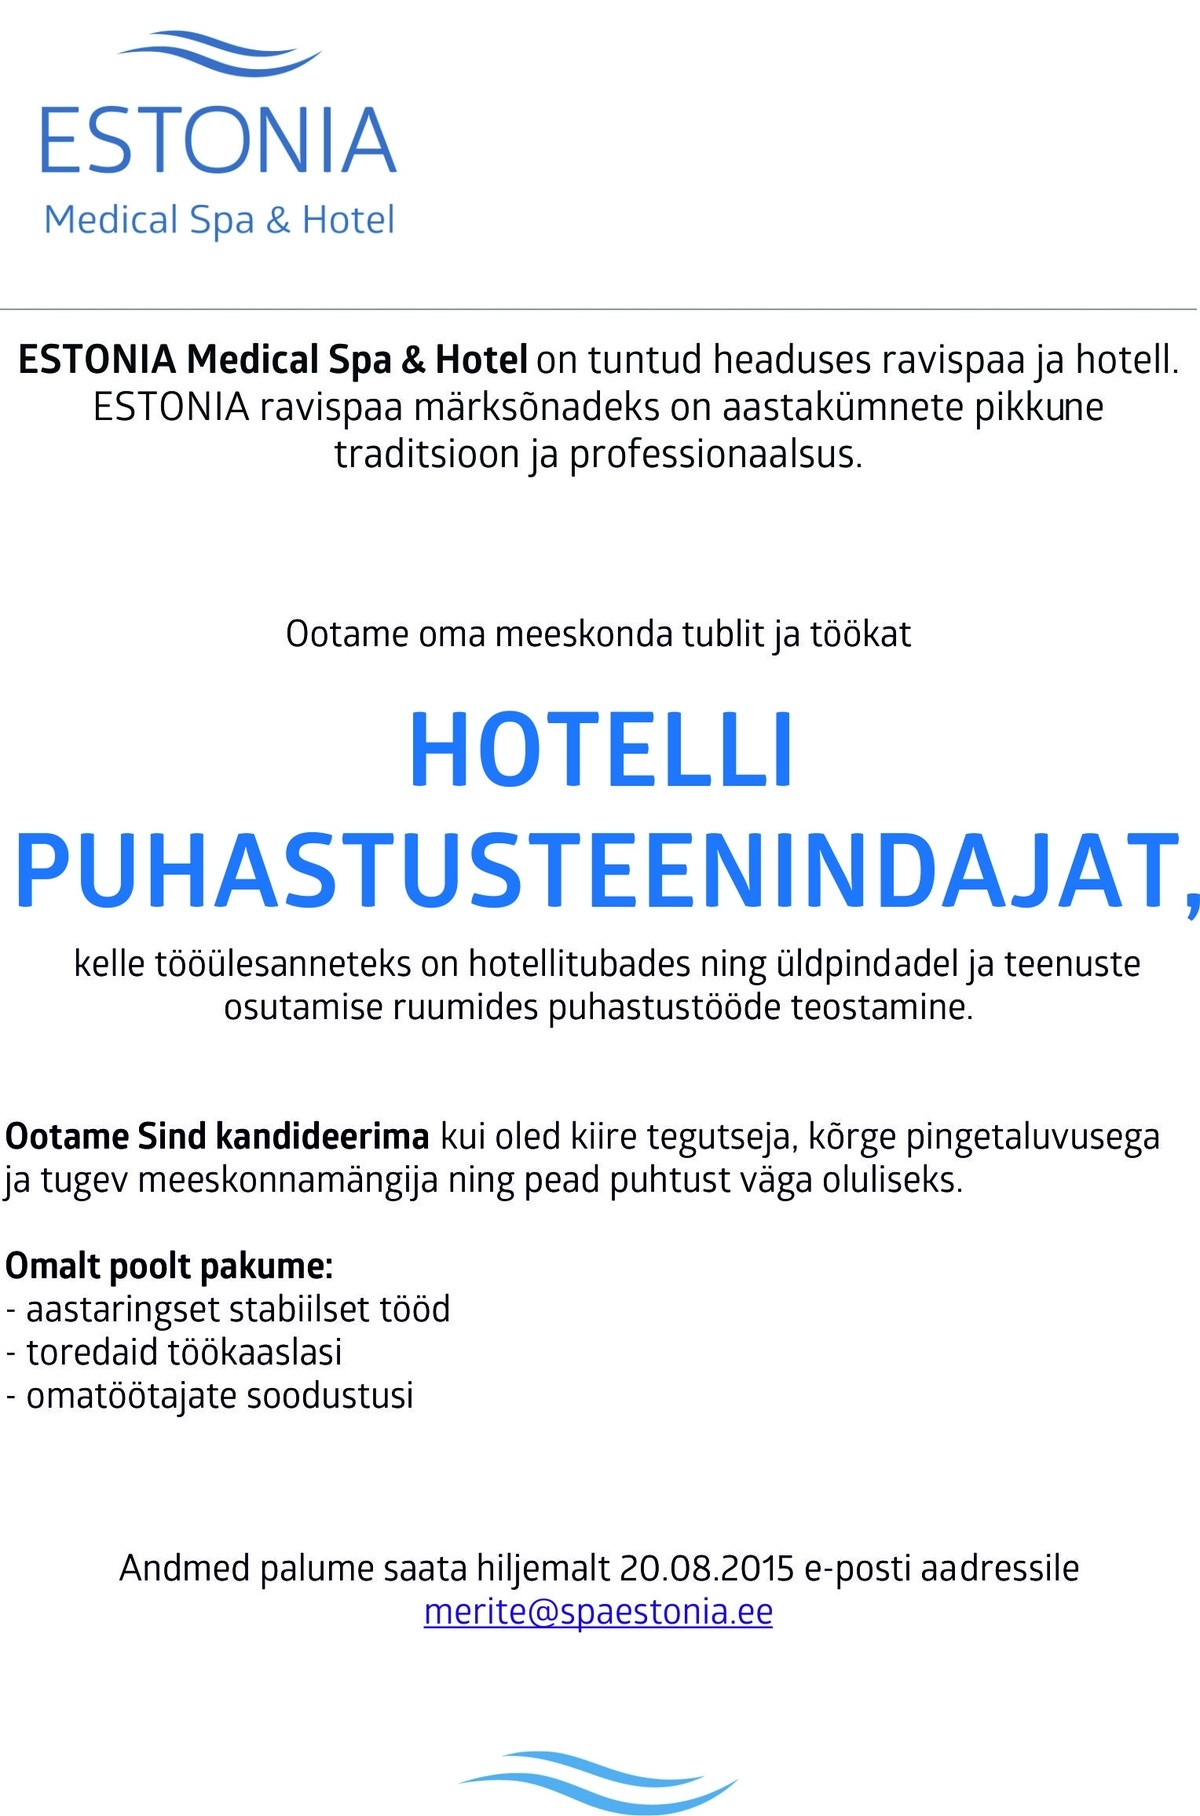 Estonia Spa Hotels AS Hotelli puhastusteenindaja